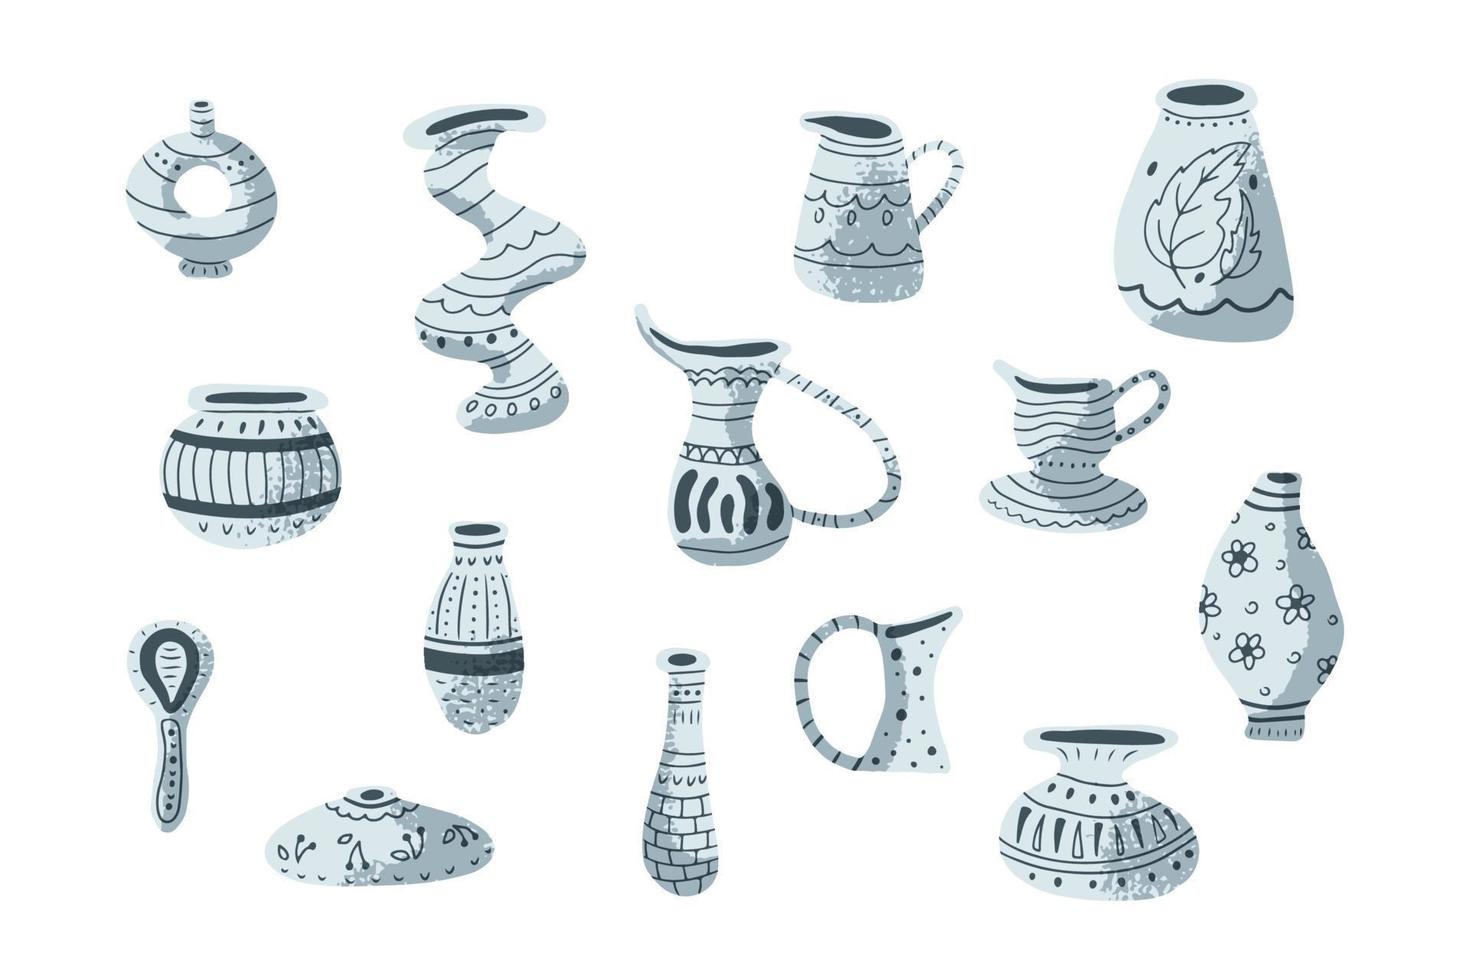 antiguos jarrones de cerámica hechos a mano, vasijas de barro pintado,  cántaros. juego de cerámica dibujado a mano. ilustración vectorial plana  aislada en fondo blanco 18863300 Vector en Vecteezy